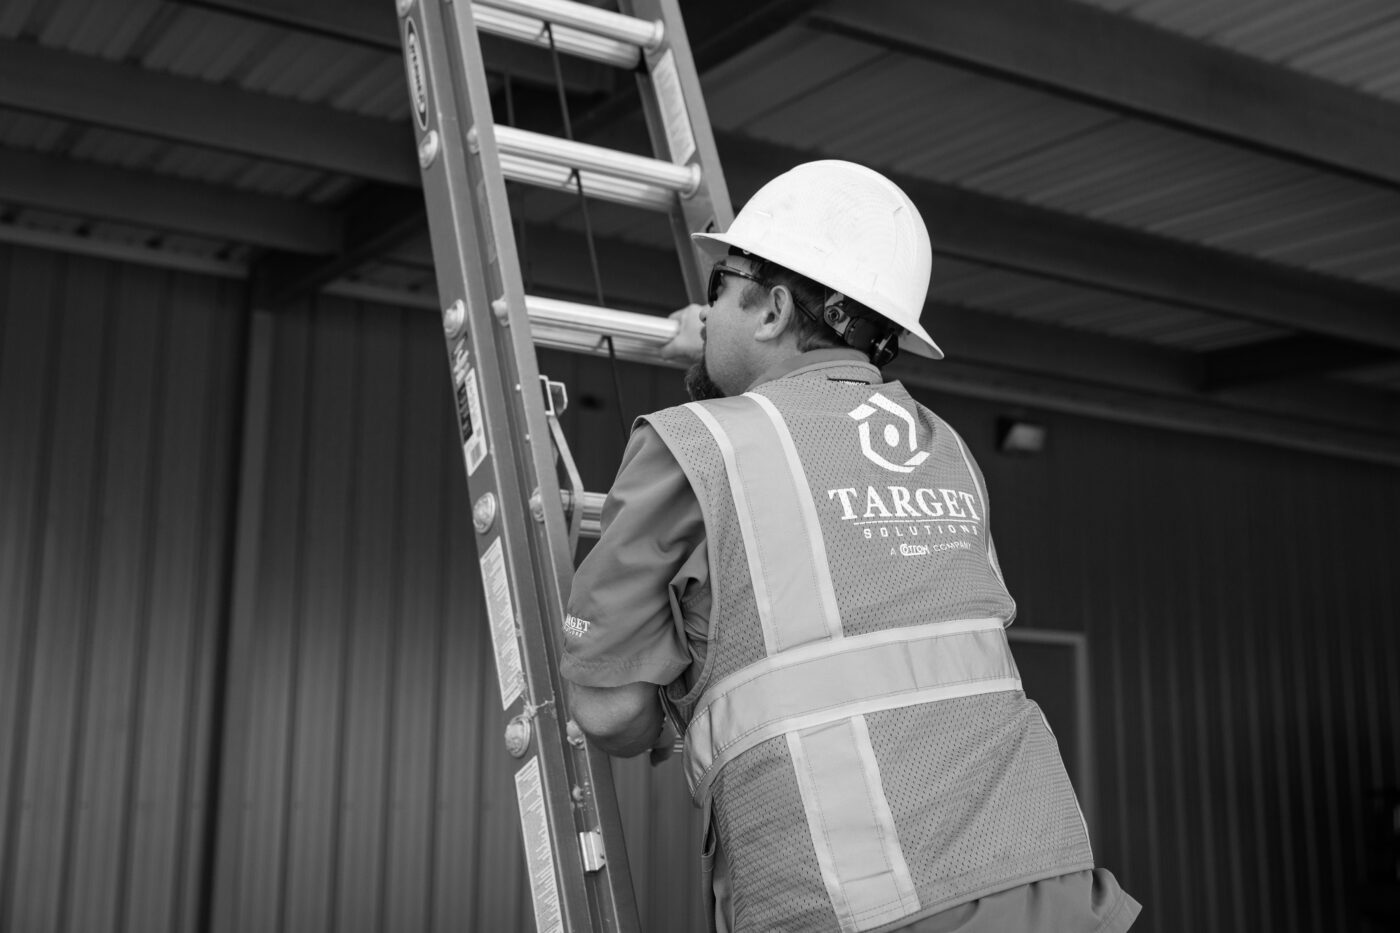 Roofing technician climbing ladder